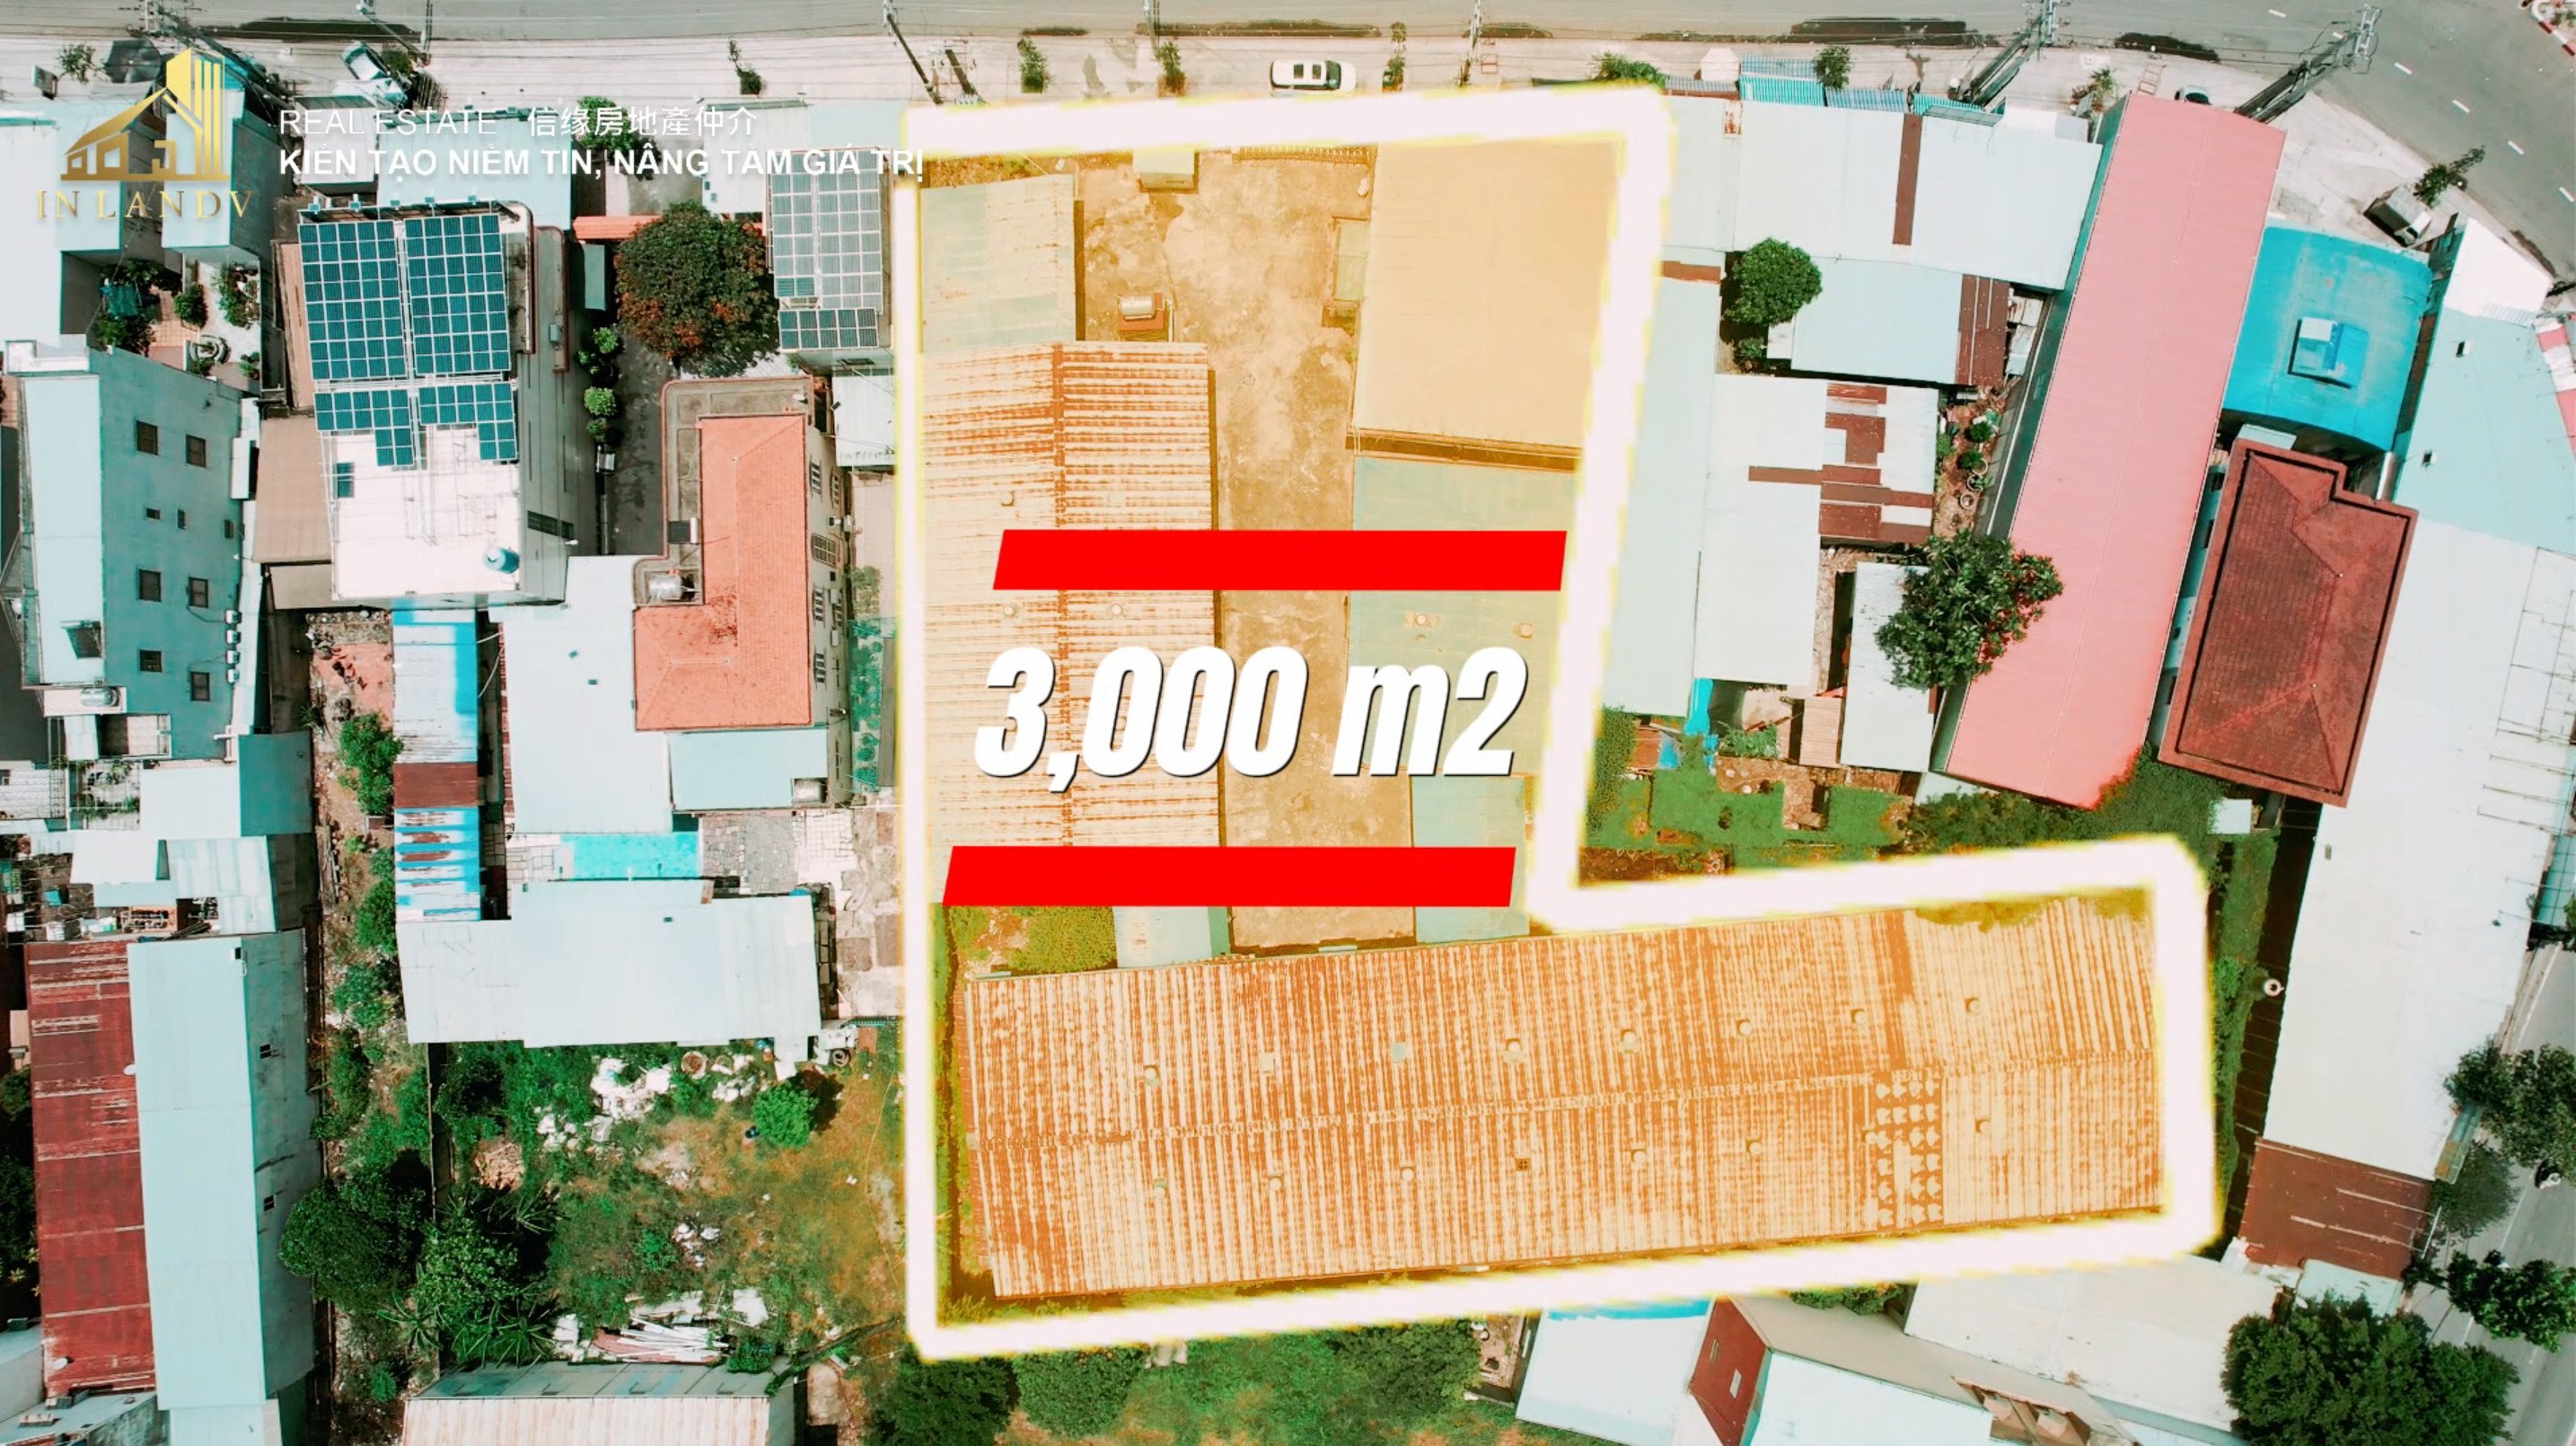 Bán Nhà xưởng -Mặt Bằng  3000m² - DT743 An Phú, Thuận An, Bình Dương - Giá 18 Triệu/m² 1